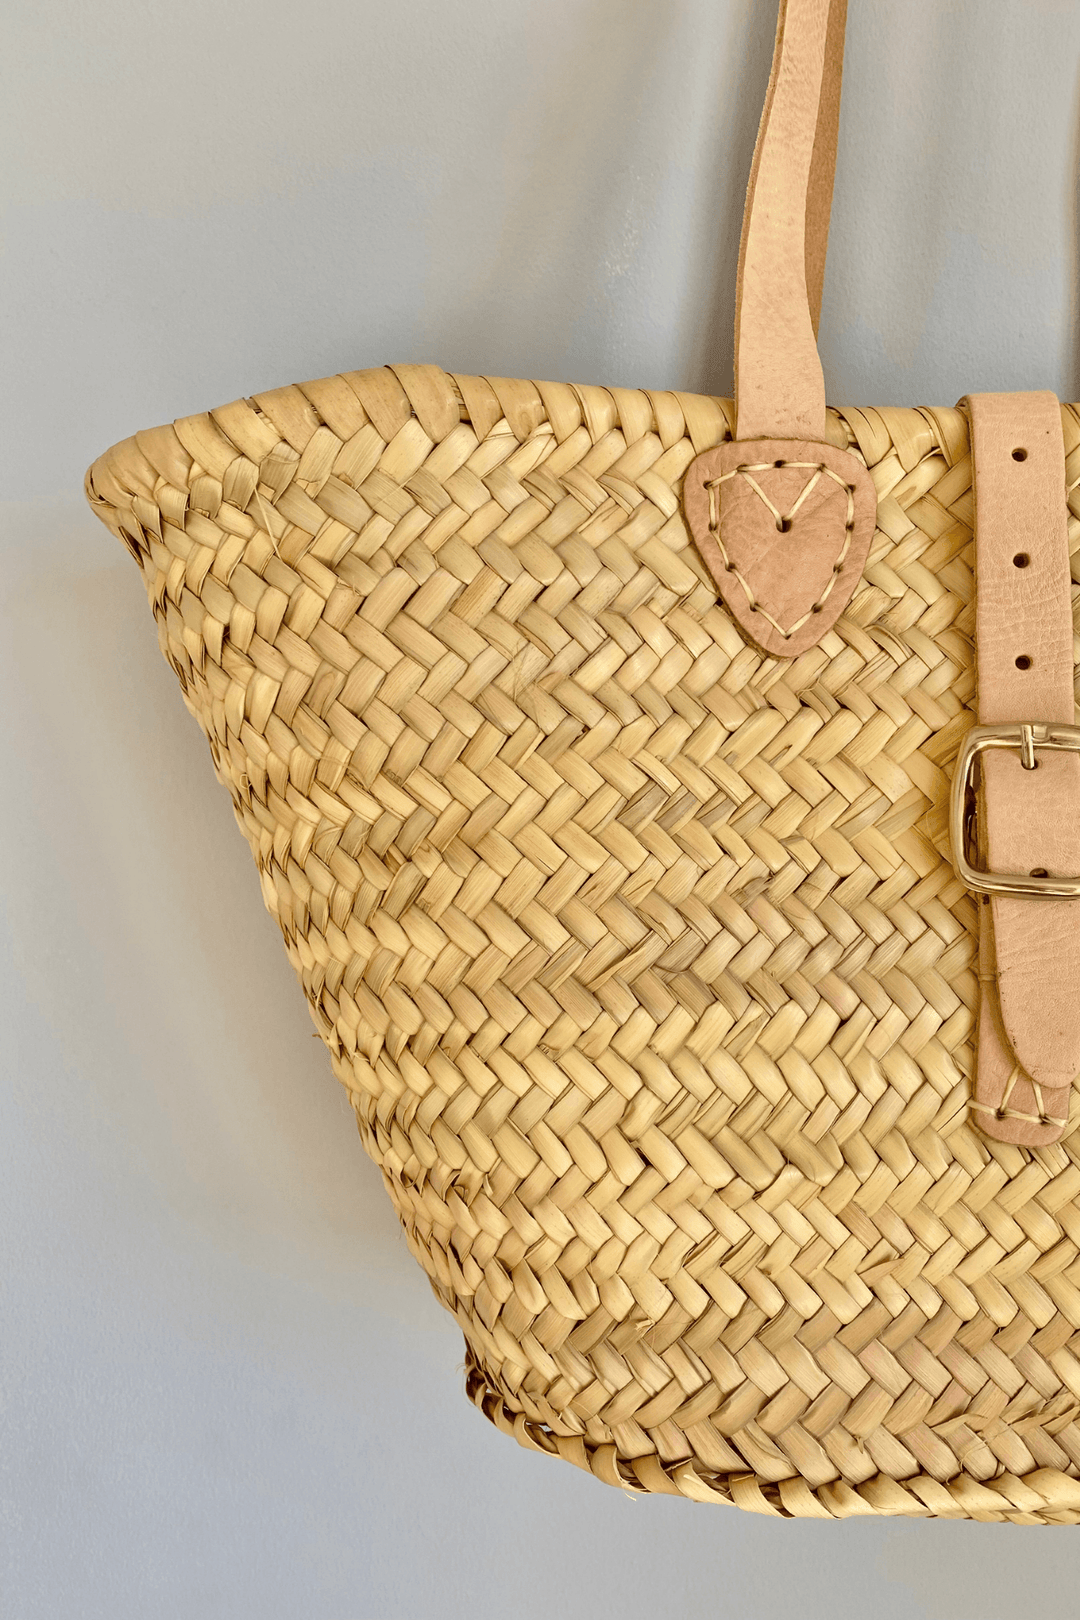 Hand Woven Basket Shoulder Bag with Strap - One Hundred Stars